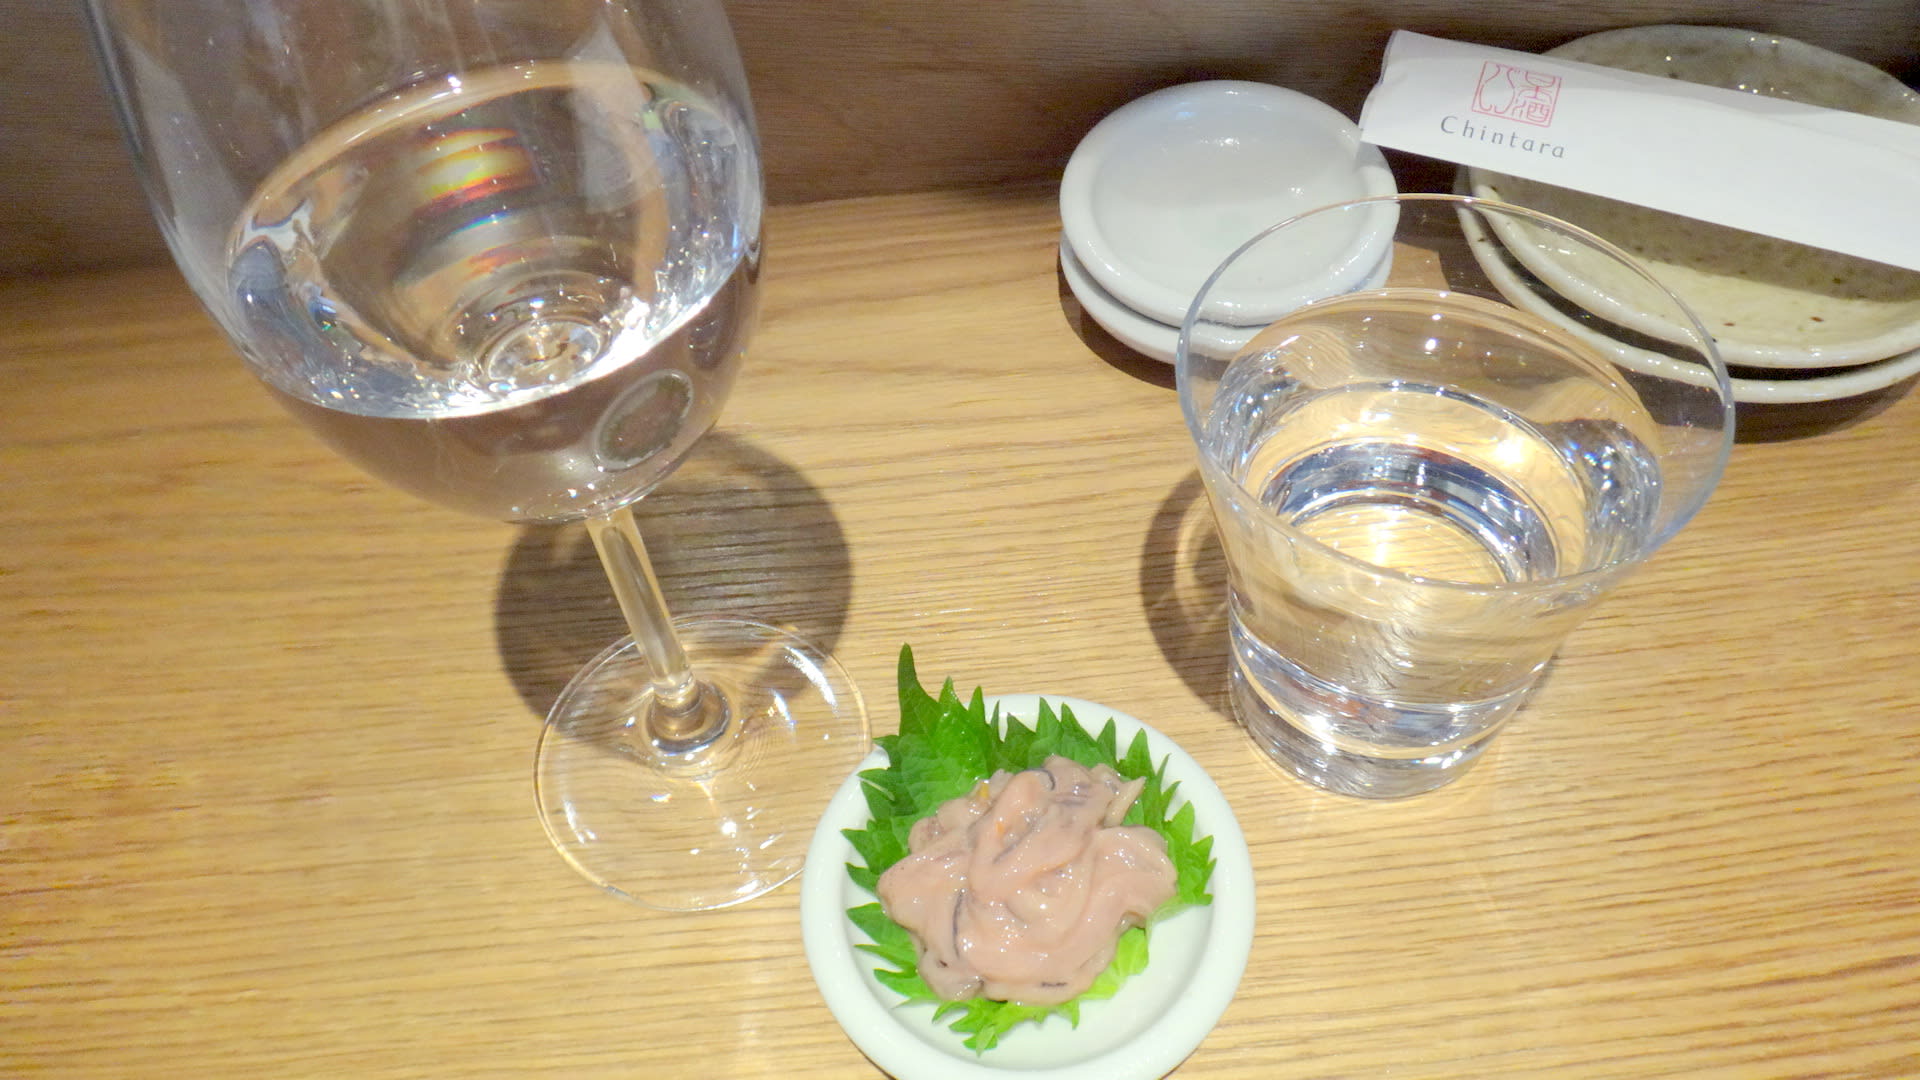 ほぼ貸切状態で日本酒の利き酒を堪能 道玄坂上の 日本酒バル チンタラ セーチンズワールド